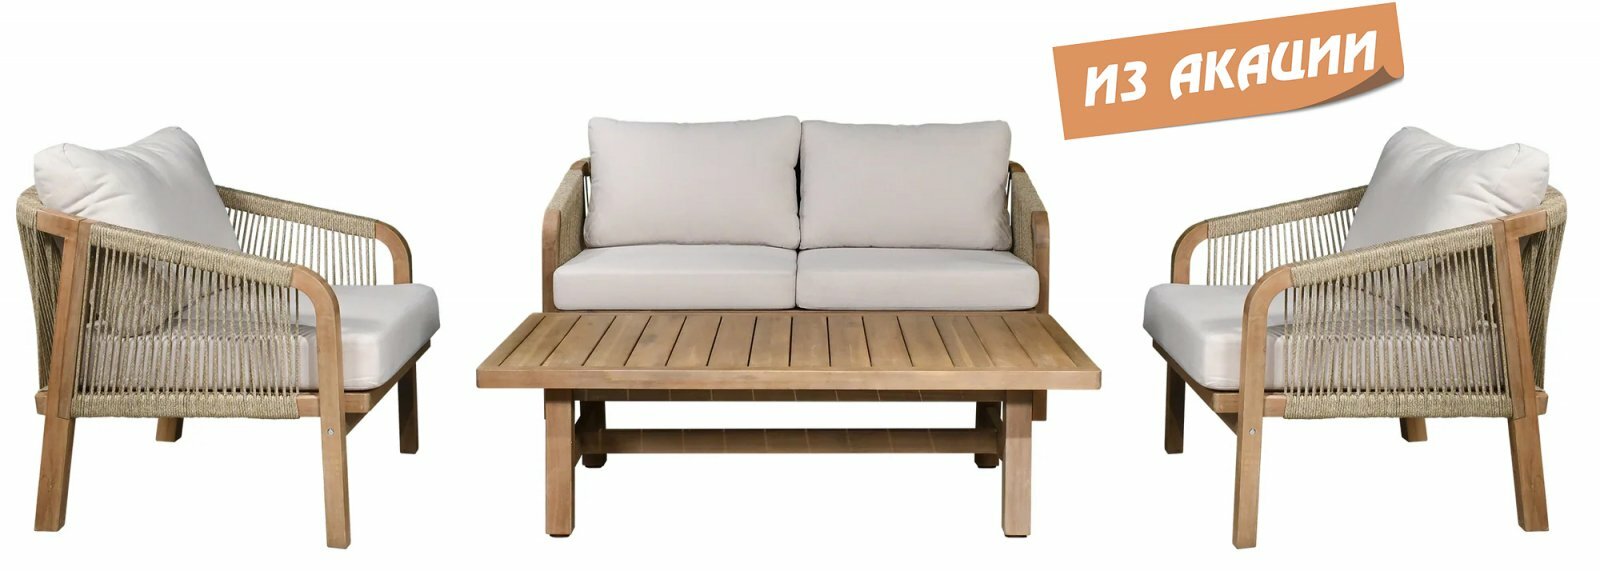 Комплект элитной деревянной лаунж-мебели Tagliamento Ravona KD, акация, 4 персоны